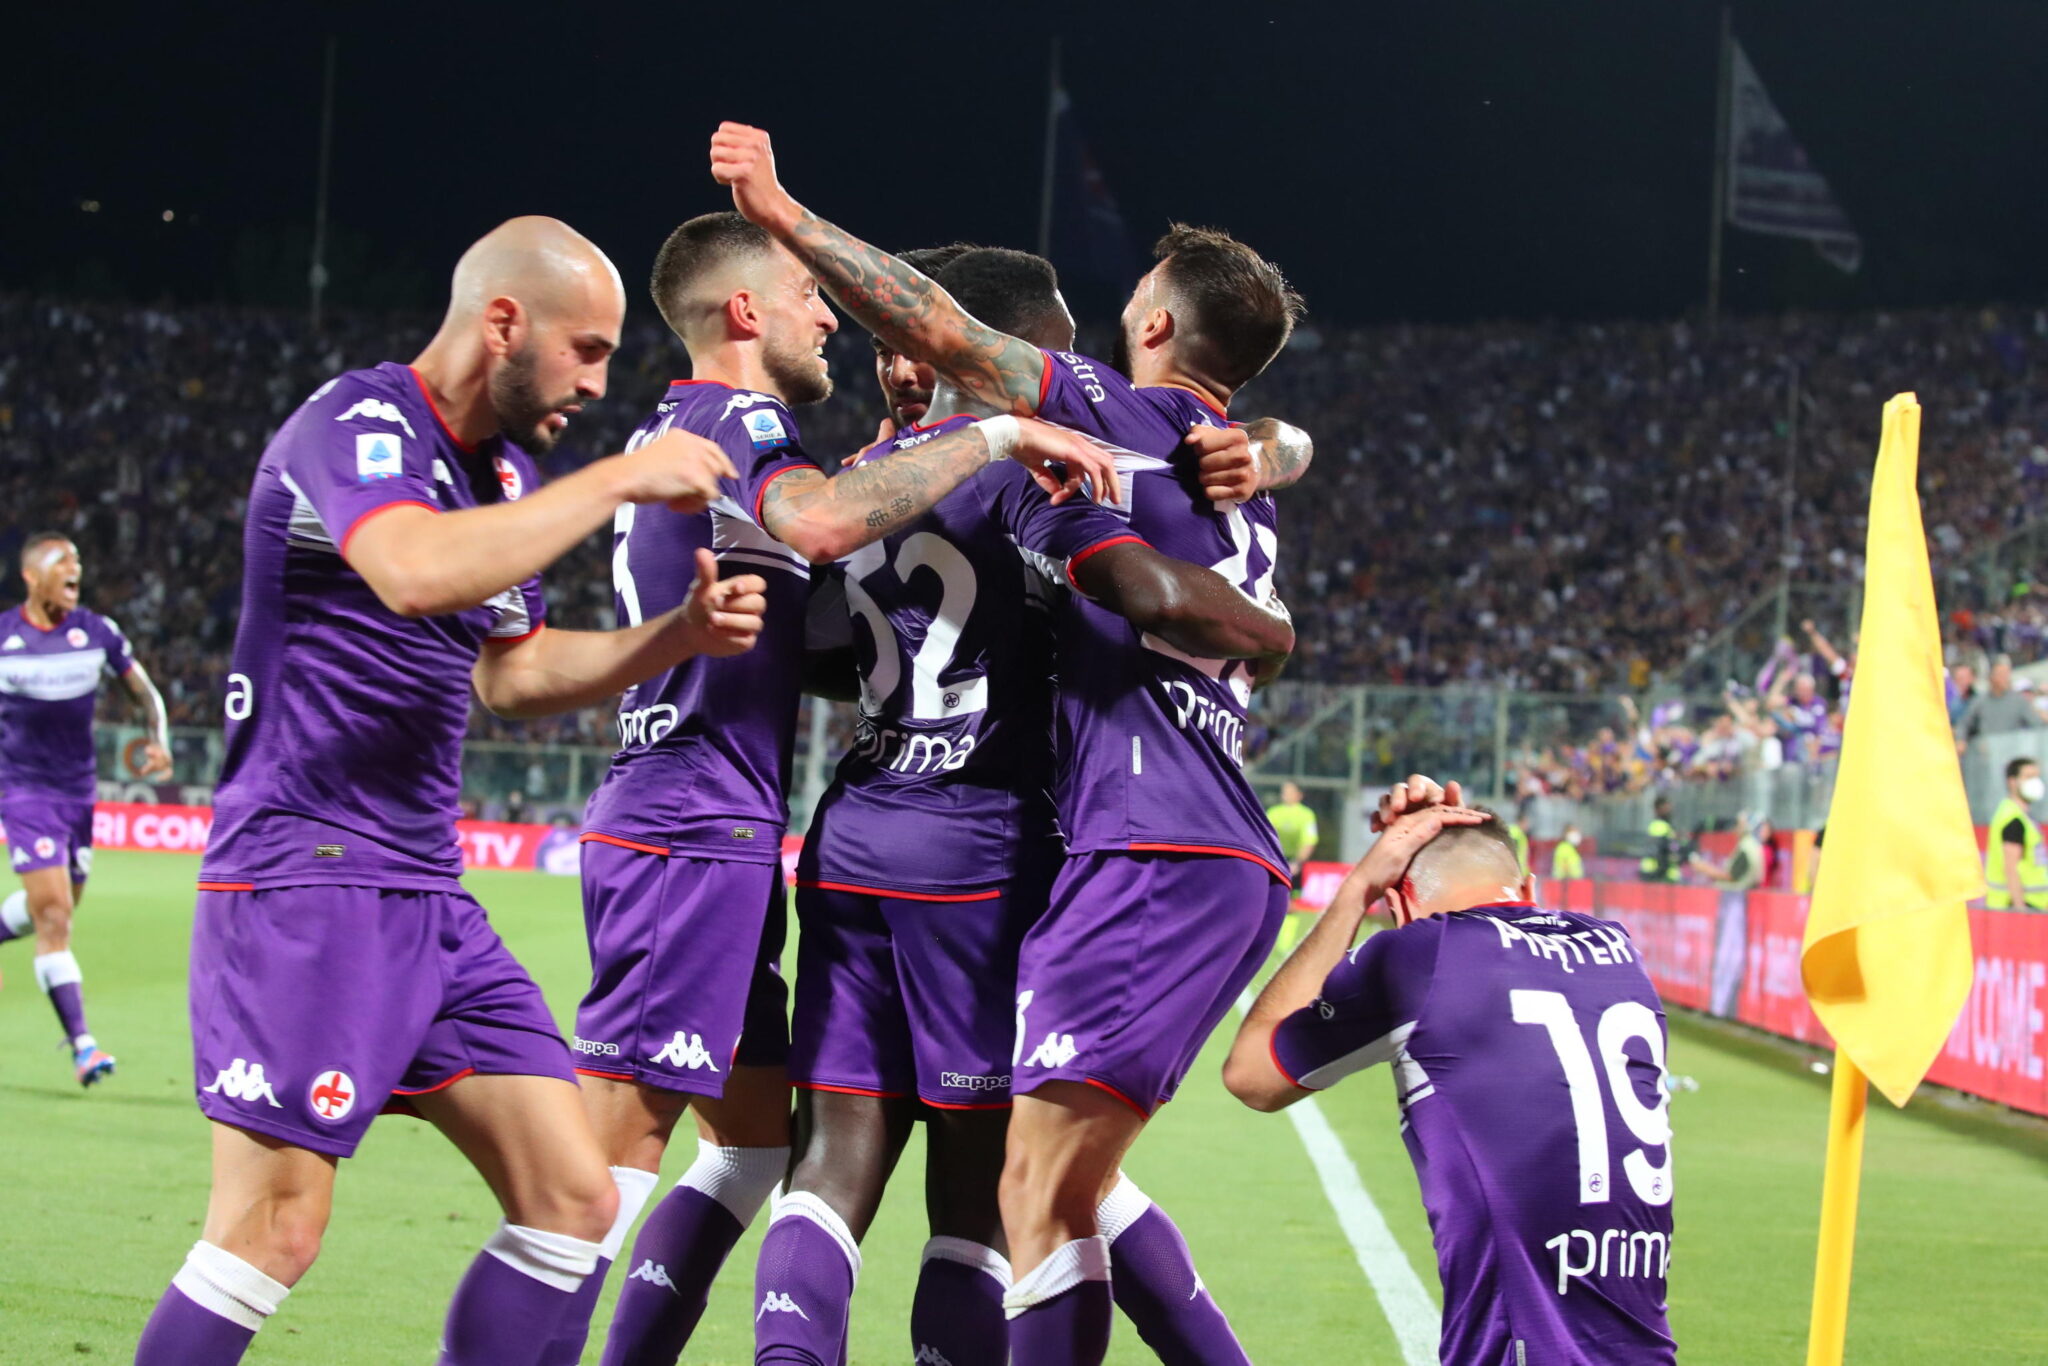 L’Atalanta fuori dall’Europa dopo 5 anni, la Fiorentina si qualifica per la Conference League: i risultati degli anticipi dell’ultima giornata di Serie A